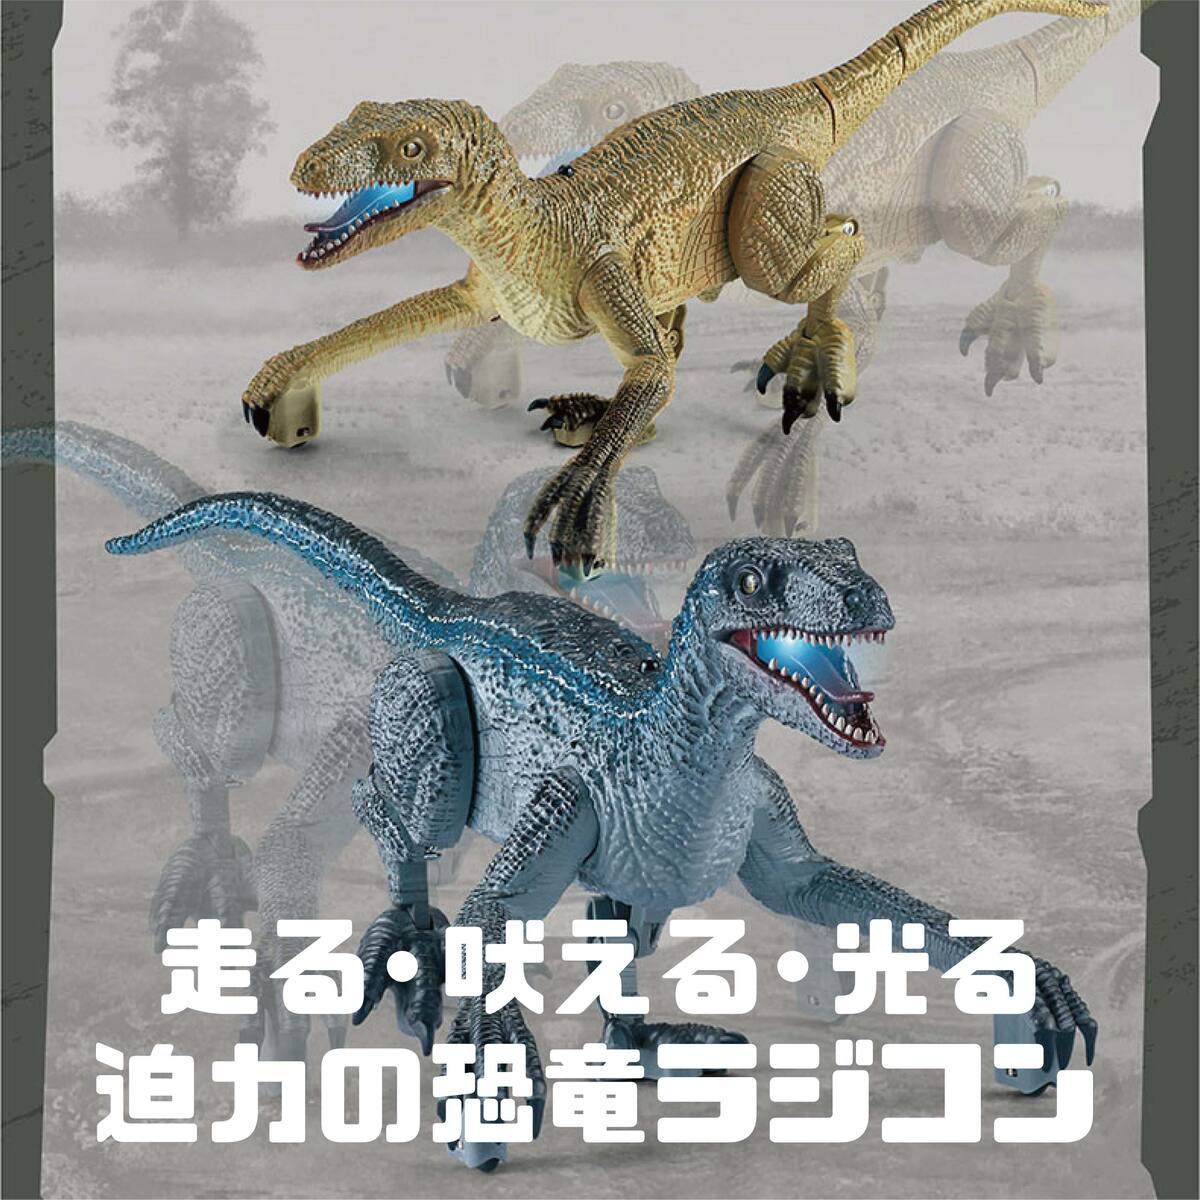  динозавр радиоконтроллер Dinosaur игрушка двигаться je lachic ... большой динозавр товары [ динозавр verokilaptoru] ребенок игрушка популярный нравится основной led установка usb зарядка 